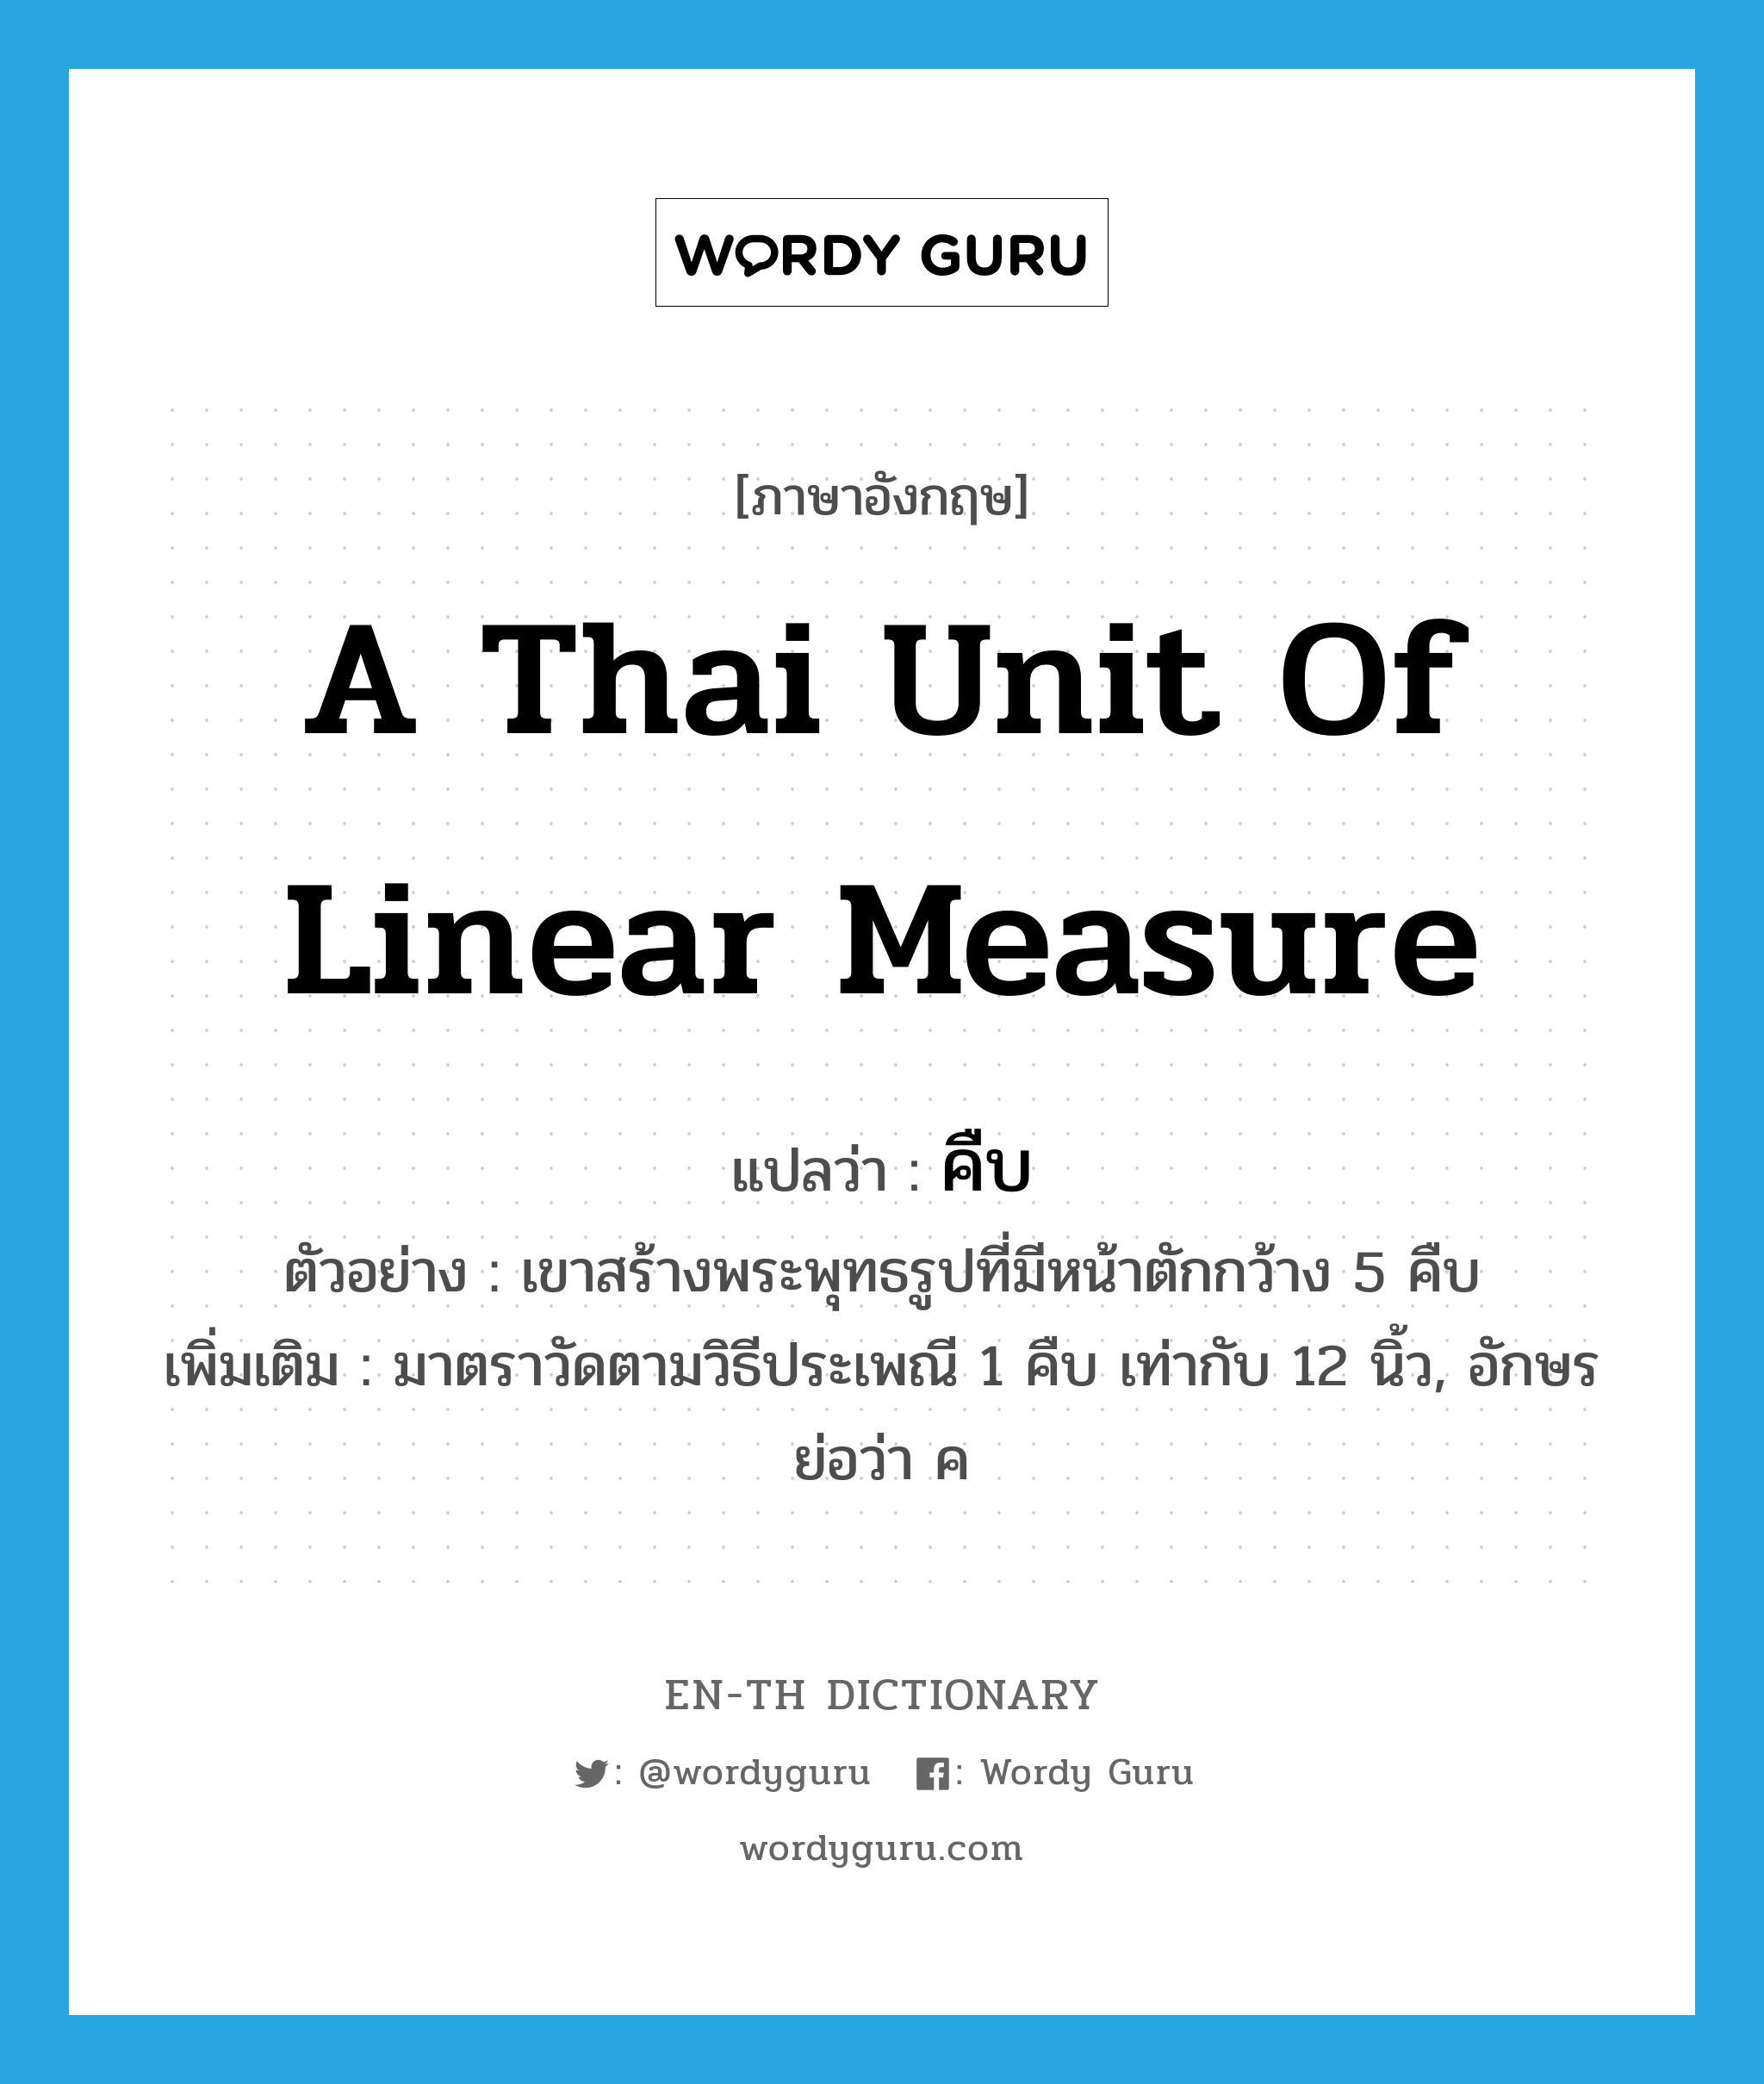 คืบ ภาษาอังกฤษ?, คำศัพท์ภาษาอังกฤษ คืบ แปลว่า a Thai unit of linear measure ประเภท CLAS ตัวอย่าง เขาสร้างพระพุทธรูปที่มีหน้าตักกว้าง 5 คืบ เพิ่มเติม มาตราวัดตามวิธีประเพณี 1 คืบ เท่ากับ 12 นิ้ว, อักษรย่อว่า ค หมวด CLAS